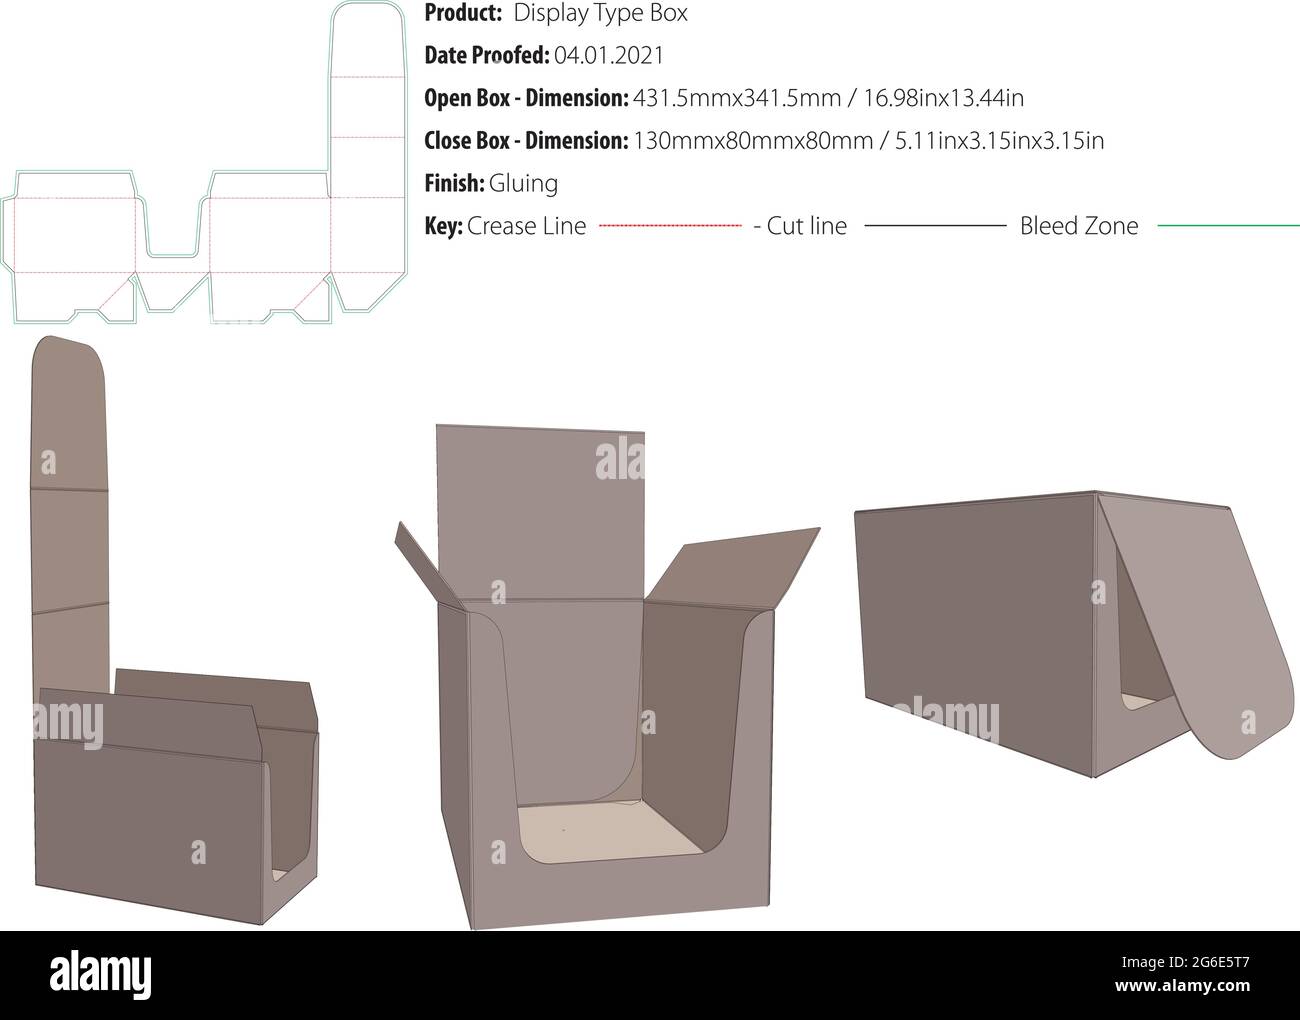 Display-Typ Box Verpackung Design Vorlage kleben Crash-Lock Stanzform geschnitten - Vektor Stock Vektor